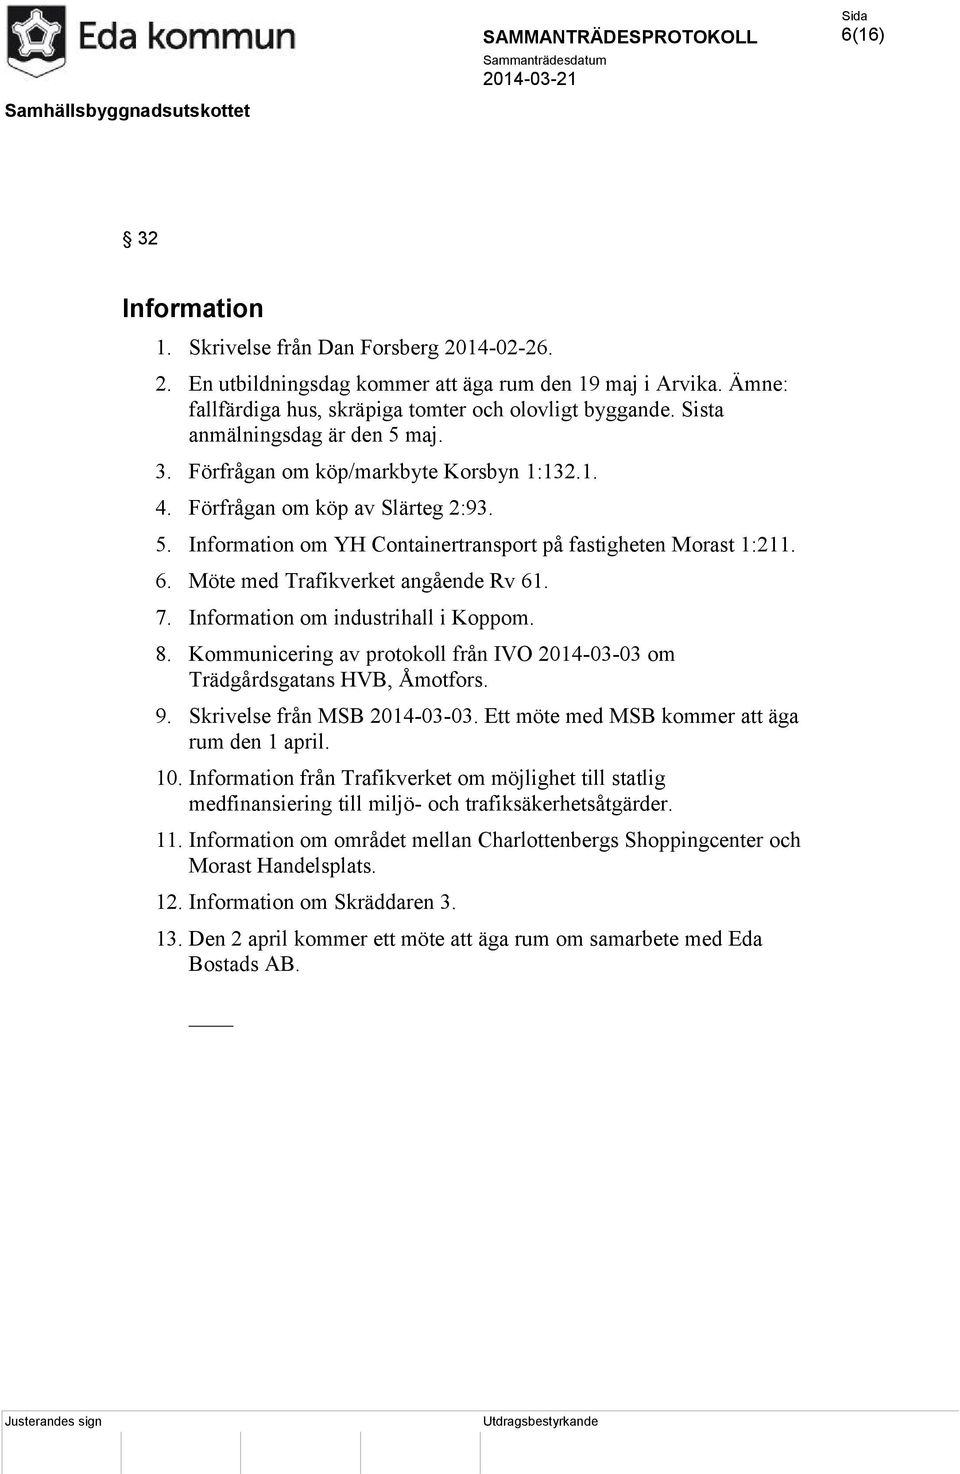 Möte med Trafikverket angående Rv 61. 7. Information om industrihall i Koppom. 8. Kommunicering av protokoll från IVO 2014-03-03 om Trädgårdsgatans HVB, Åmotfors. 9. Skrivelse från MSB 2014-03-03.